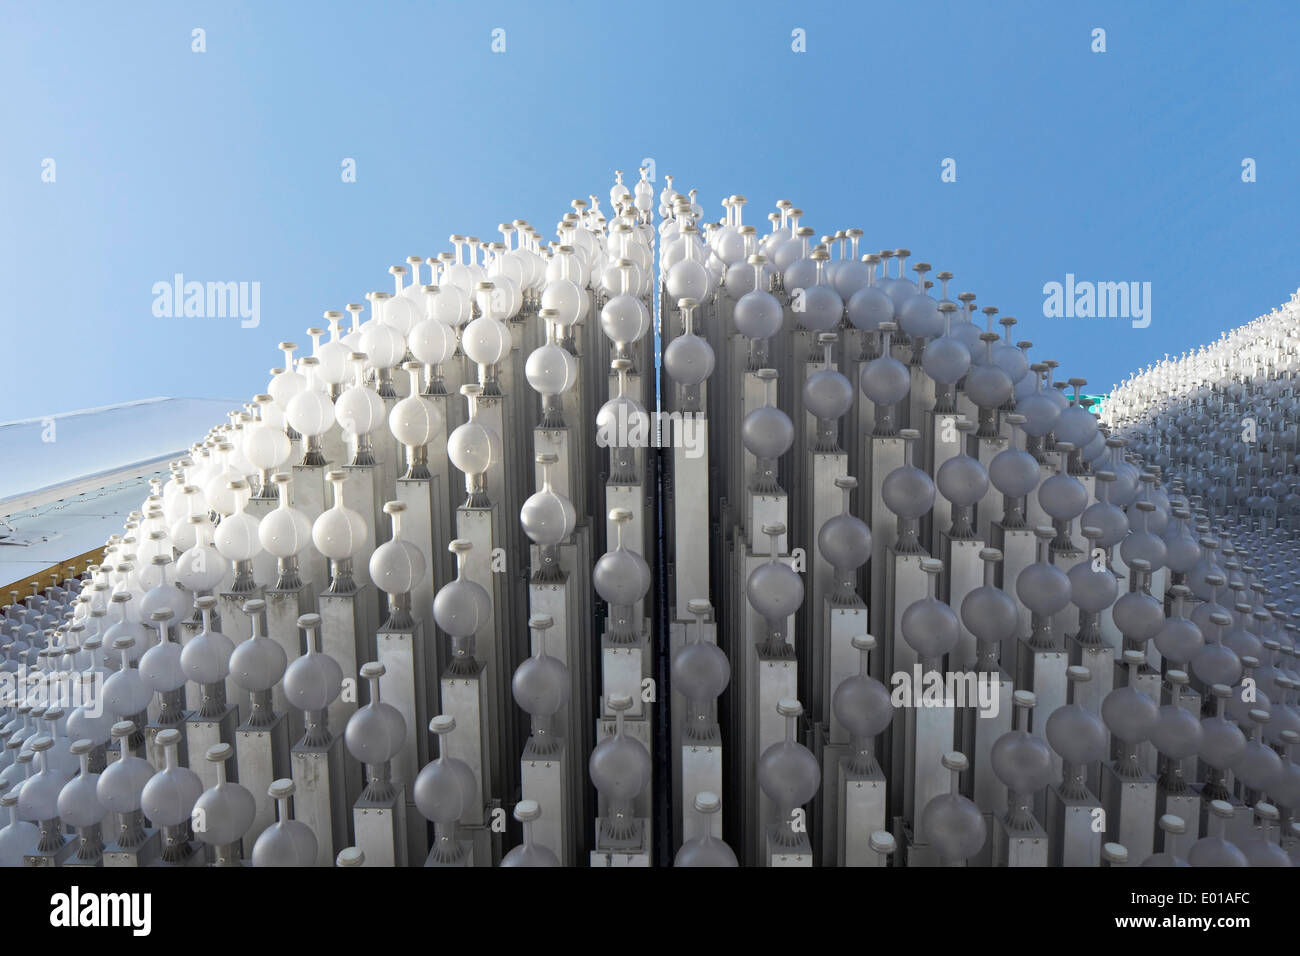 MegaFon, Winterspiele in Sotschi 2014 Sotschi, Russland. Architekt: Asif Khan, 2014. Detail der dreidimensionale Fläche Oberfläche. Stockfoto